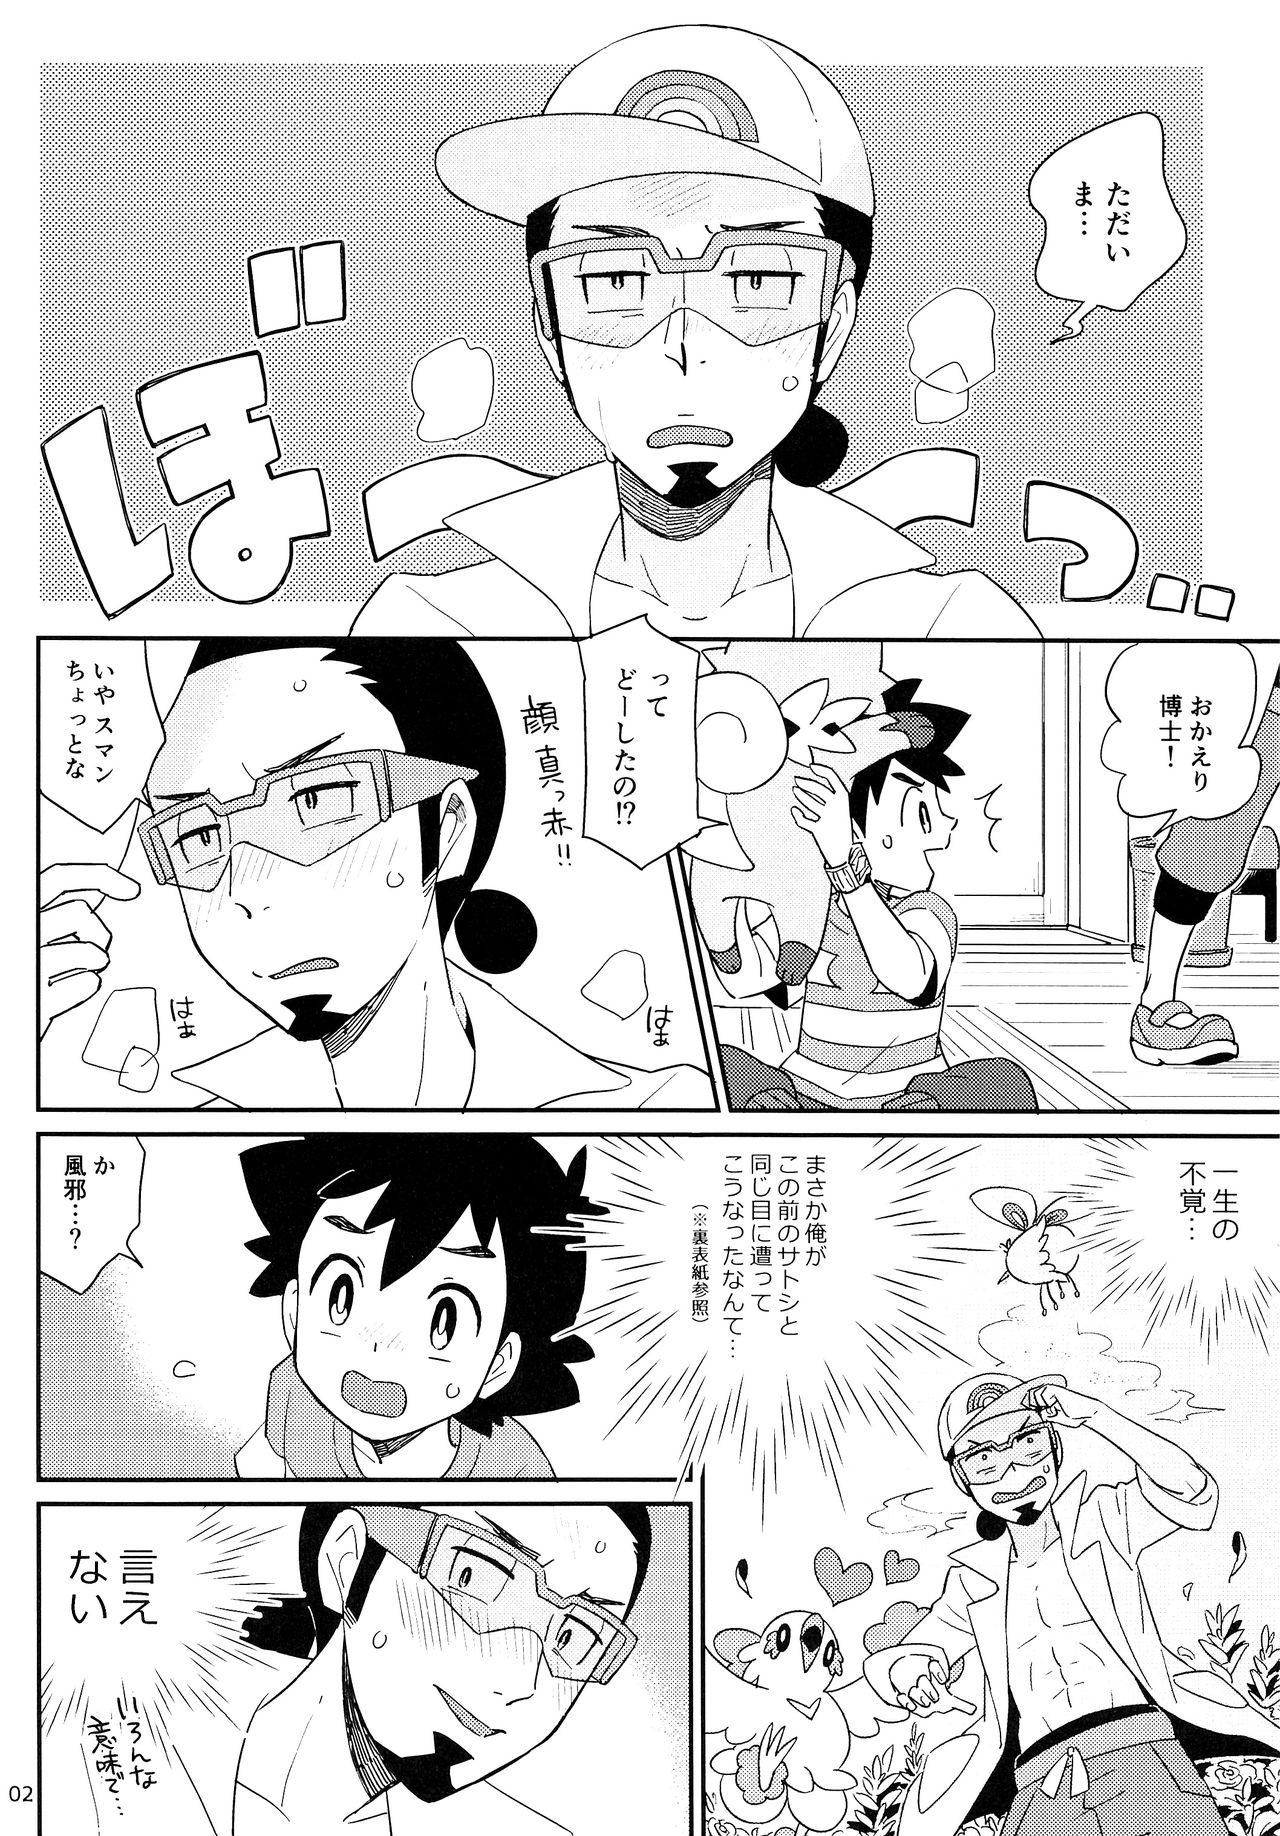 Abg Okaerinasai no Sono Ato wa - Pokemon Beautiful - Page 2